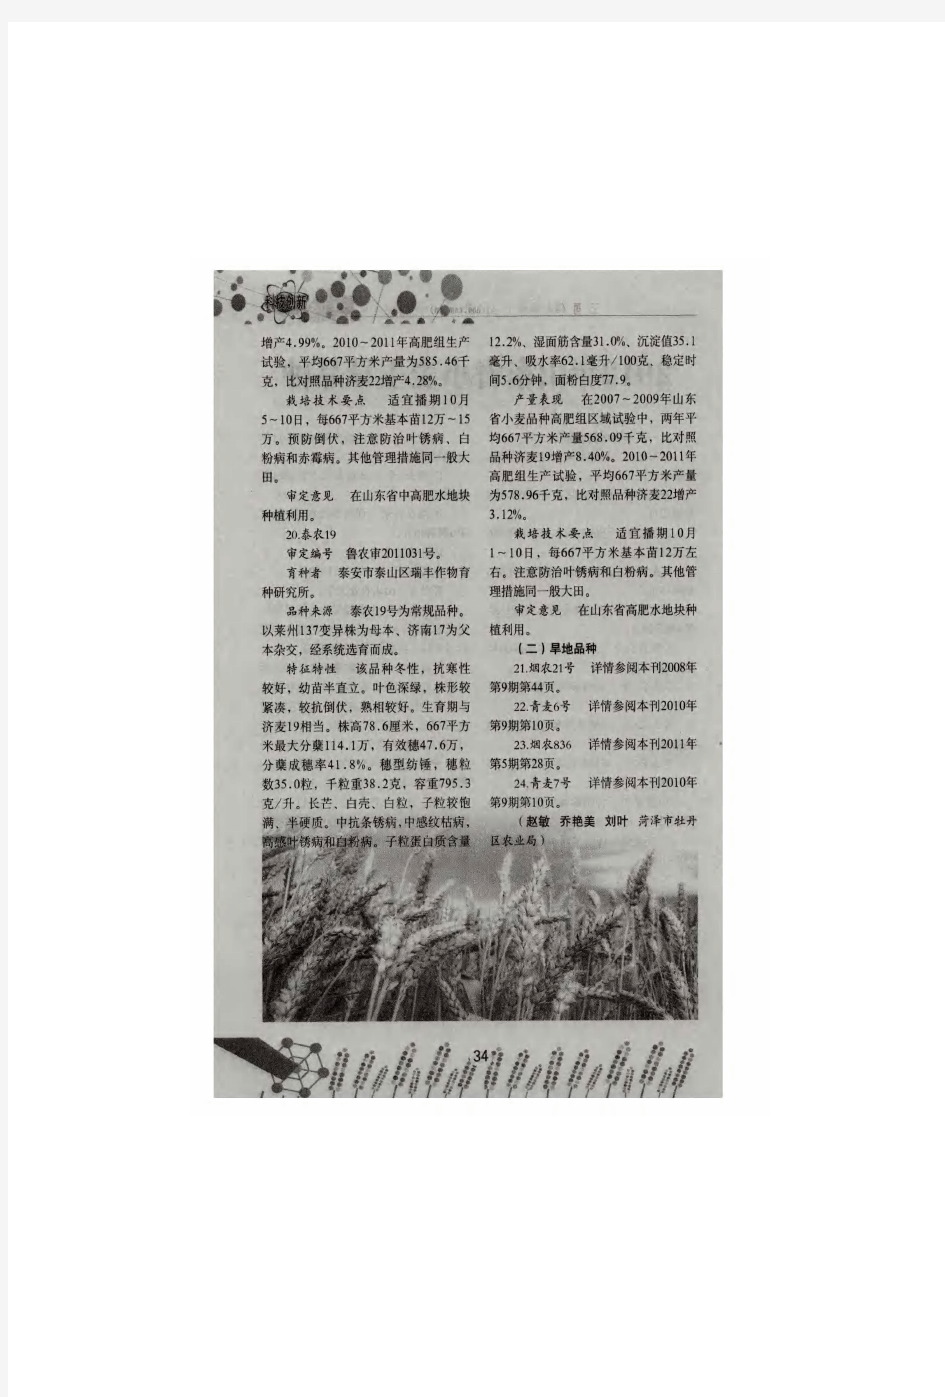 2012年山东省小麦主导品种